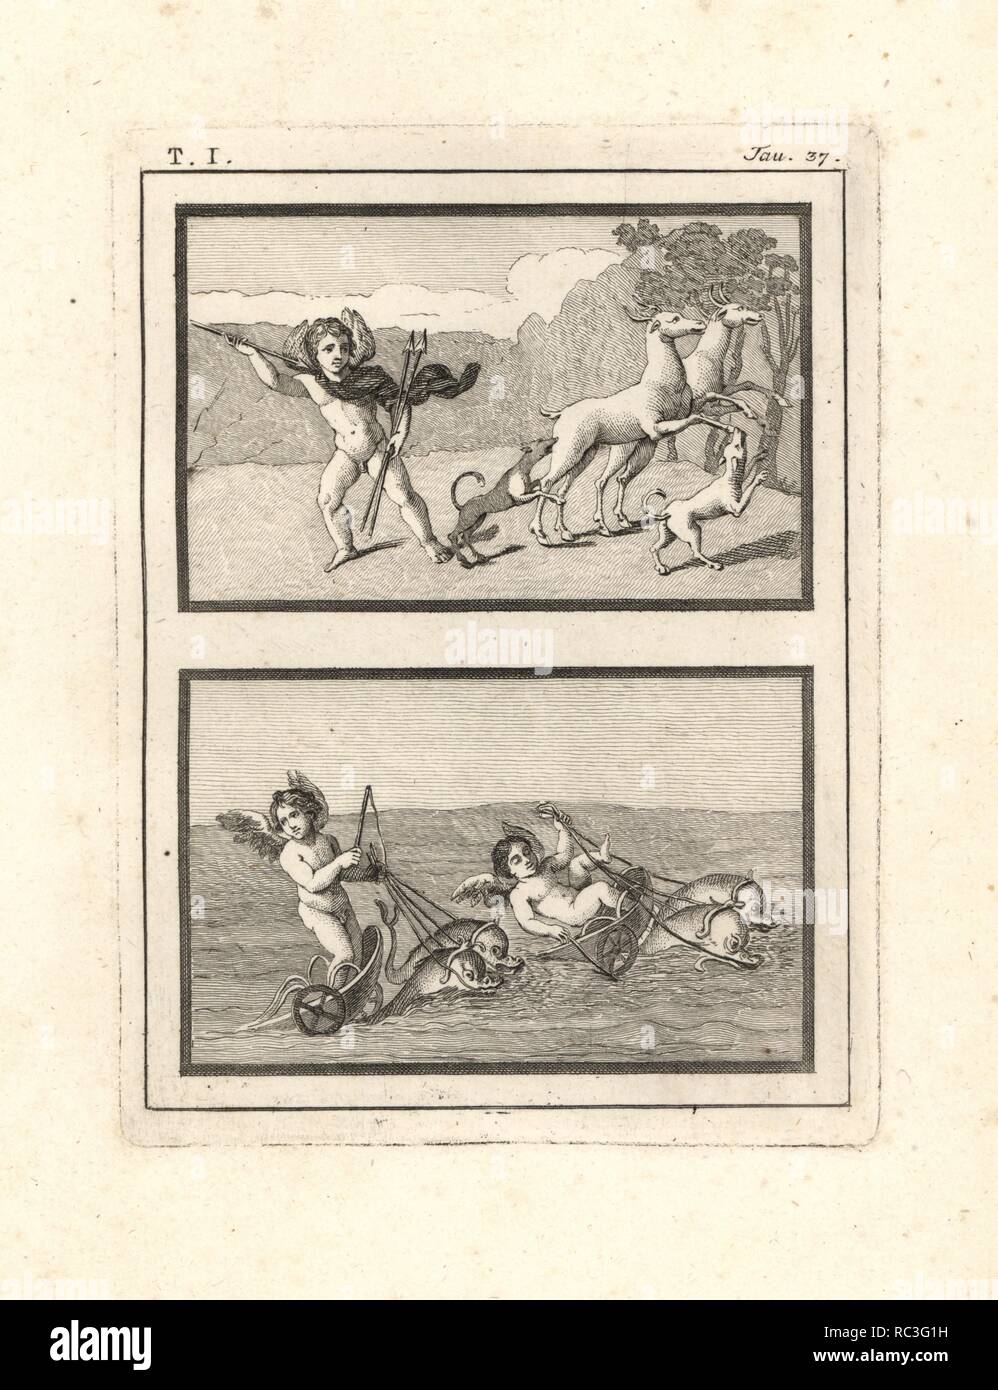 Vignetten von amoretten oder genii spielen bei der Jagd und Racing. Oben, eine dynamische Darstellung der Genius der Jagd mit Speeren, Hunde und Hirsche. Unten, zwei genien Rennen Wagen von Delfinen im Meer gezogen scheint - Schlafen wie die berühmten fährmann des Aeneas. Kupferstich von Tommaso Piroli aus seiner eigenen'Antichita di Ercolano" (altertümer von Herculaneum), Rom, 1789 eingraviert. Italienischen Maler und Kupferstecher Piroli (1752-1824) veröffentlicht sechs Bände zwischen 1789 und 1807 dokumentieren die Wandmalereien und Bronzen in Heraculaneum und Pompeji gefunden. Stockfoto